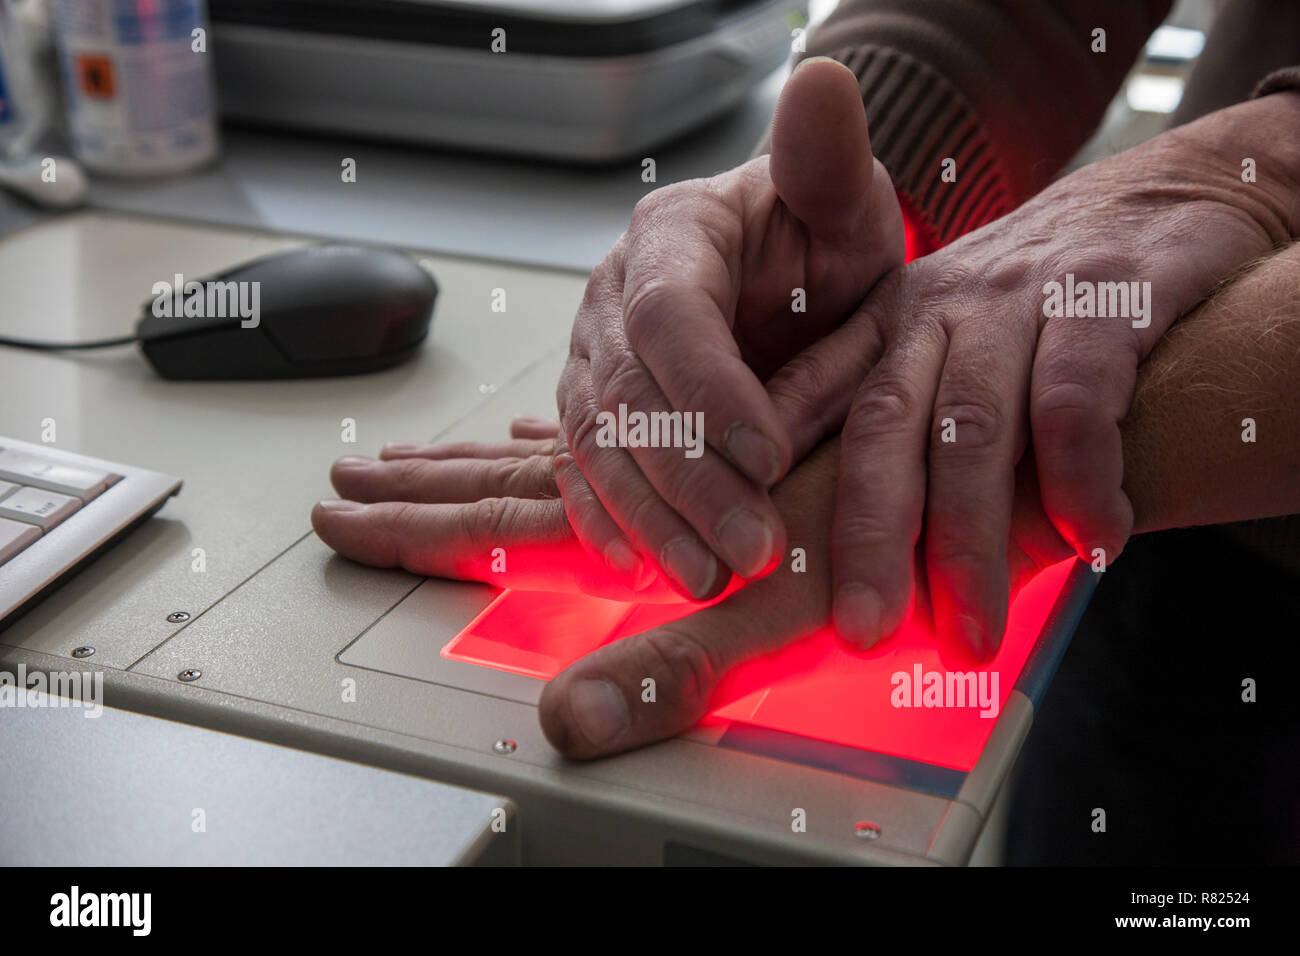 Las huellas dactilares y palmares impresiones de una persona sospechosa se graban con un escáner, Alemania Foto de stock